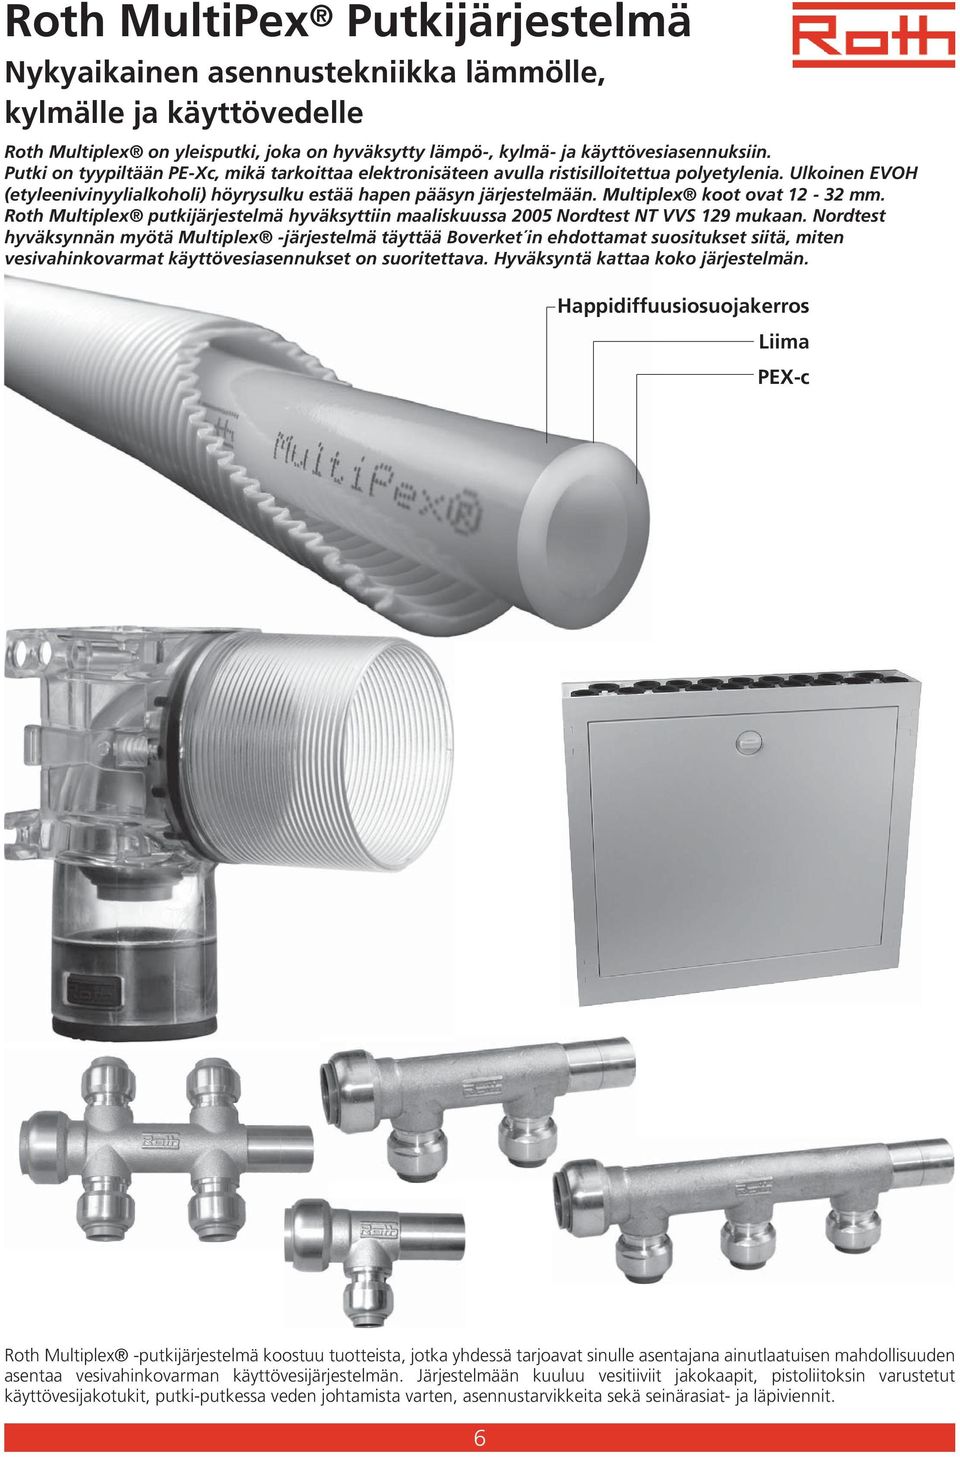 Multiplex koot ovat 12-32 mm. Roth Multiplex putkijärjestelmä hyväksyttiin maaliskuussa 2005 Nordtest NT VVS 129 mukaan.